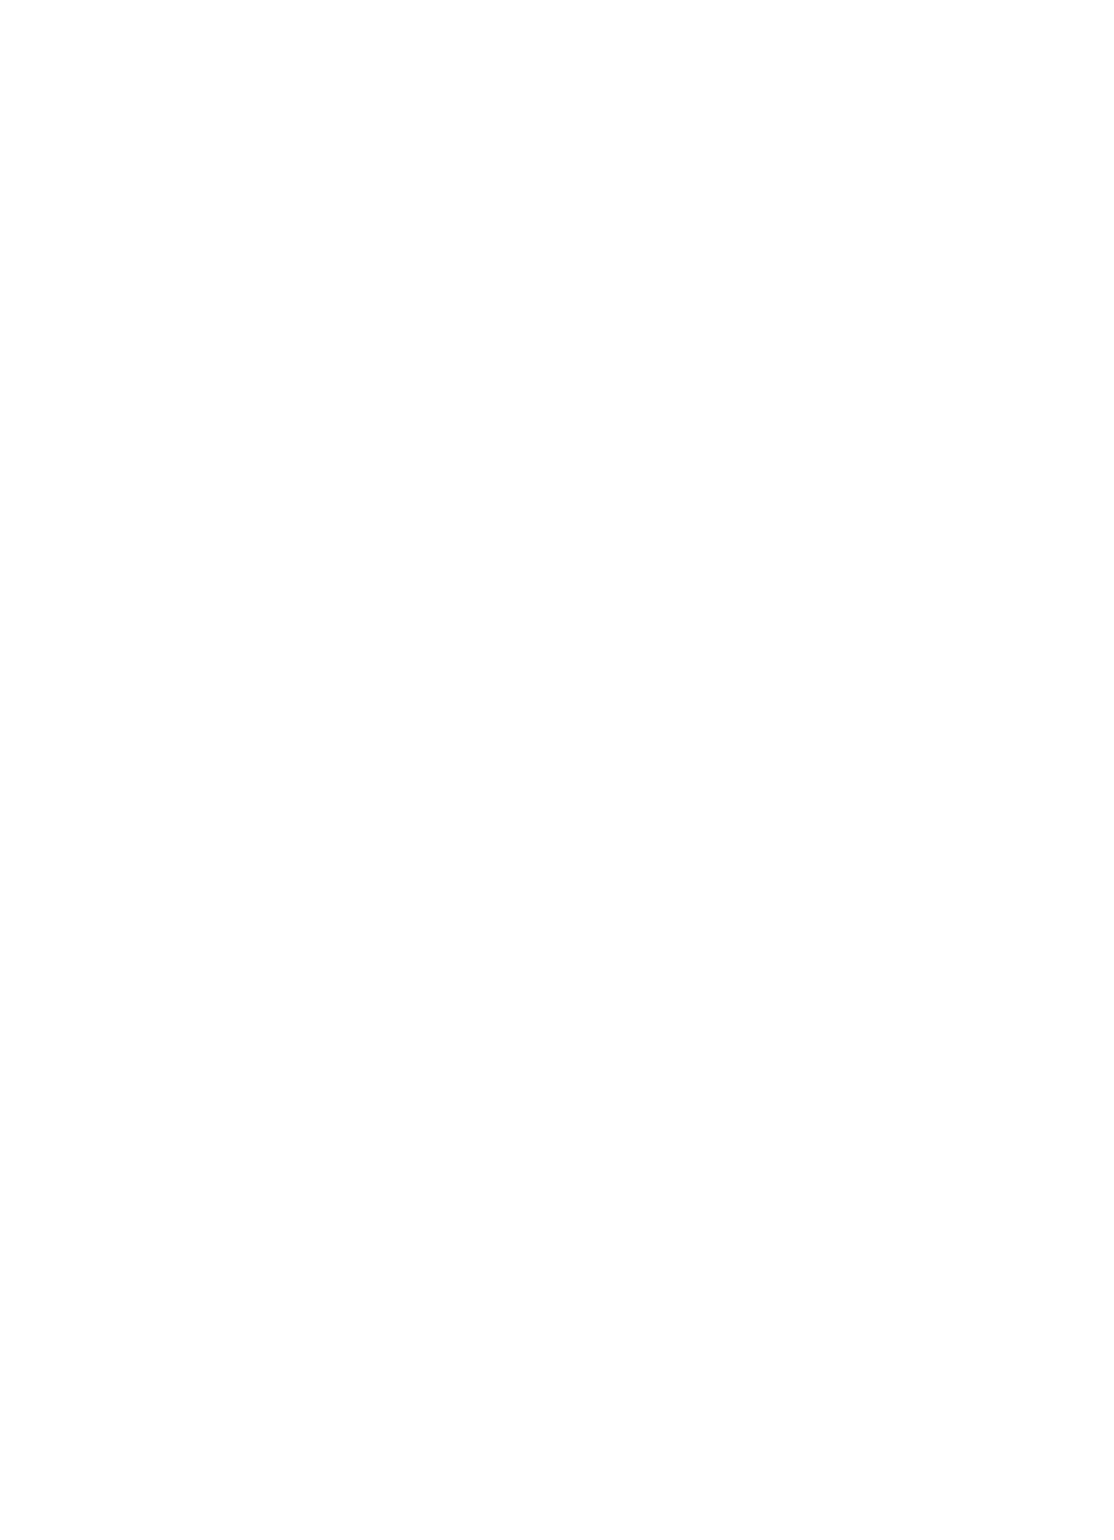 Better Business Bureau Logo - Better Business Bureau (1114x1540), Png Download